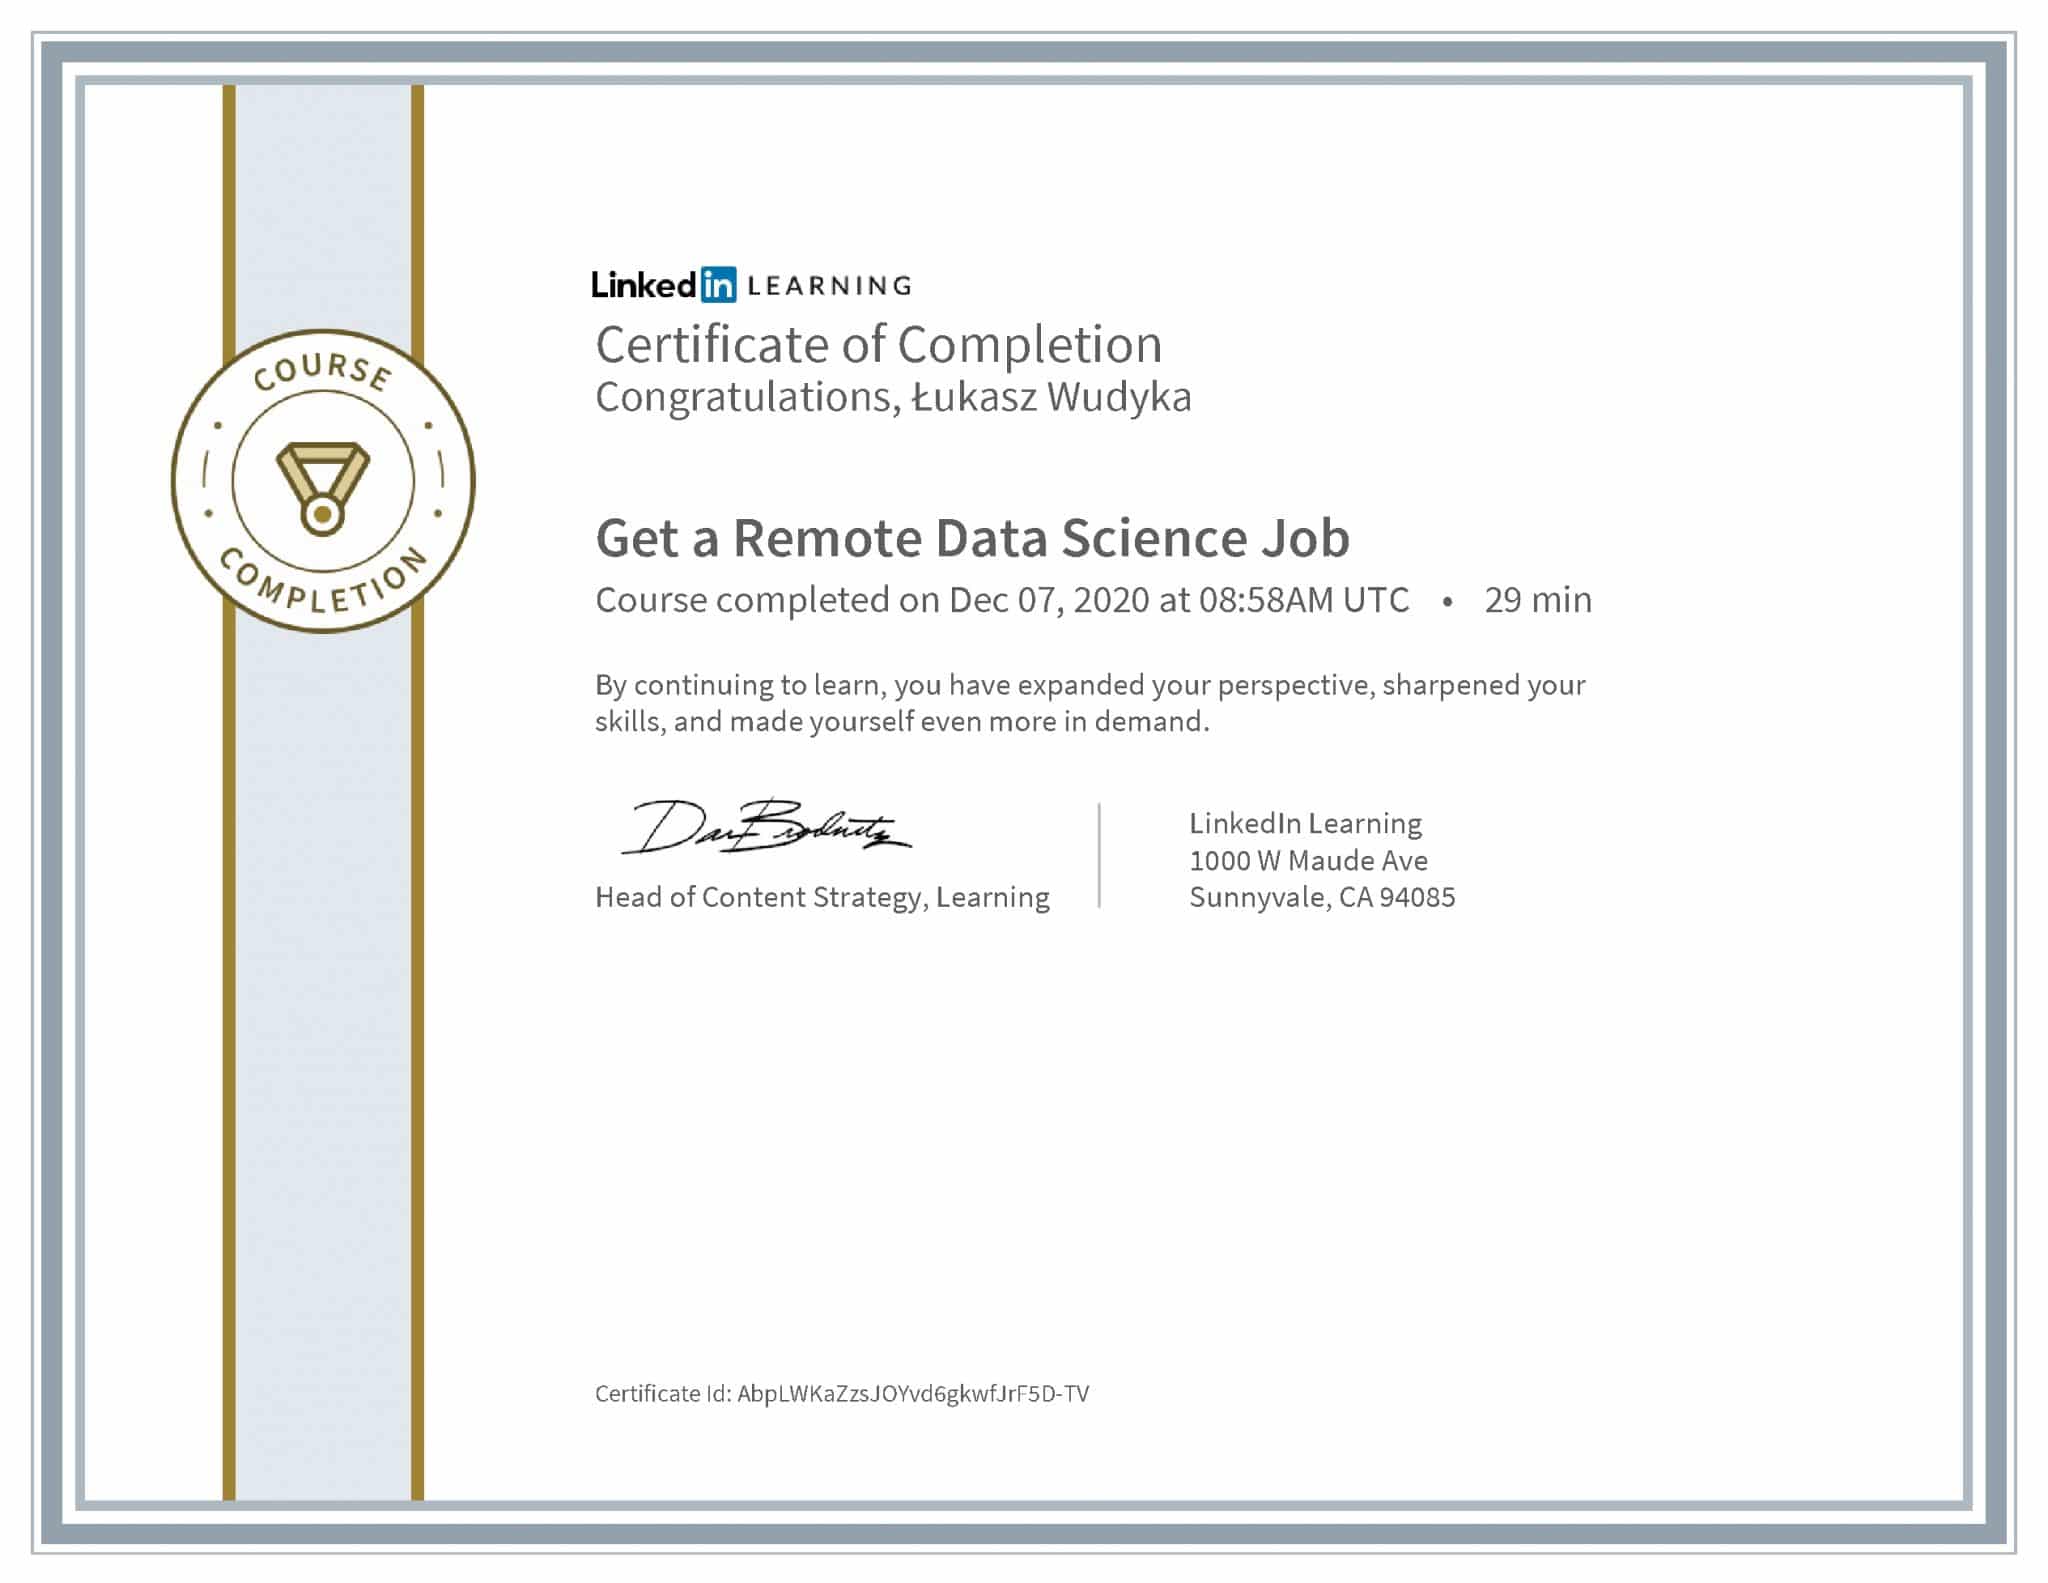 Łukasz Wudyka certyfikat LinkedIn Get a Remote Data Science Job